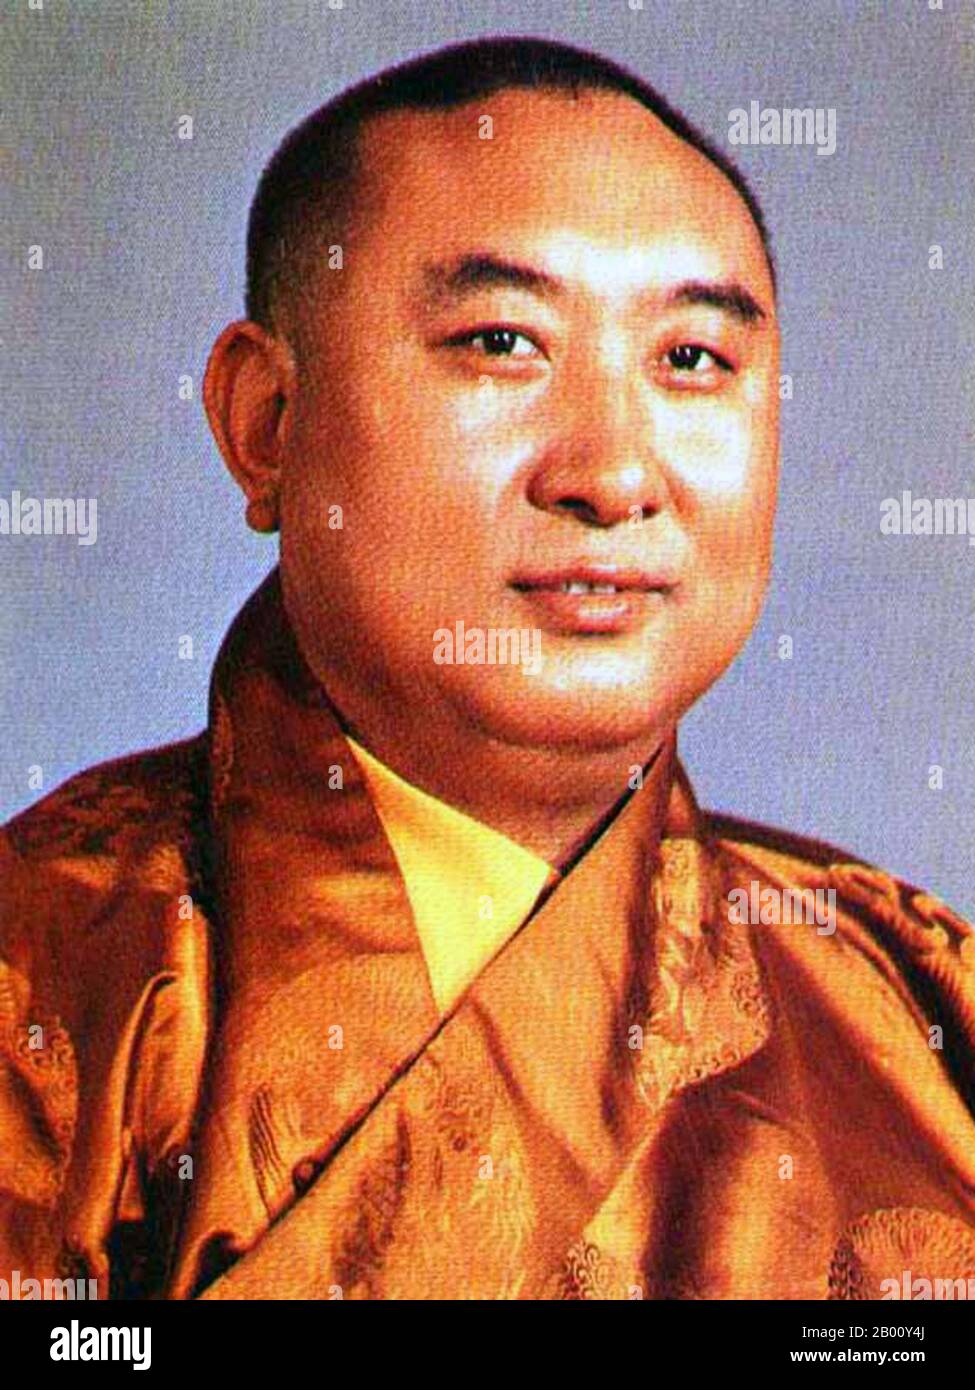 China/Tibet: Lobsang Trinley Lhündrub Chökyi Gyaltsen (1938 –1989), 10. Panchen Lama. Lobsang Trinley Lhündrub Chökyi Gyaltsen (19. Februar 1938 – 28. Januar 1989) war der 10. Panchen Lama der Gelug-Schule des tibetischen Buddhismus. Er wurde oft einfach als Choekyi Gyaltsen bezeichnet (was Choekyi Gyaltse, Choskyi Gyantsen usw. sein kann), obwohl dies auch der Name mehrerer anderer bemerkenswerter Persönlichkeiten in der tibetischen Geschichte ist. Stockfoto